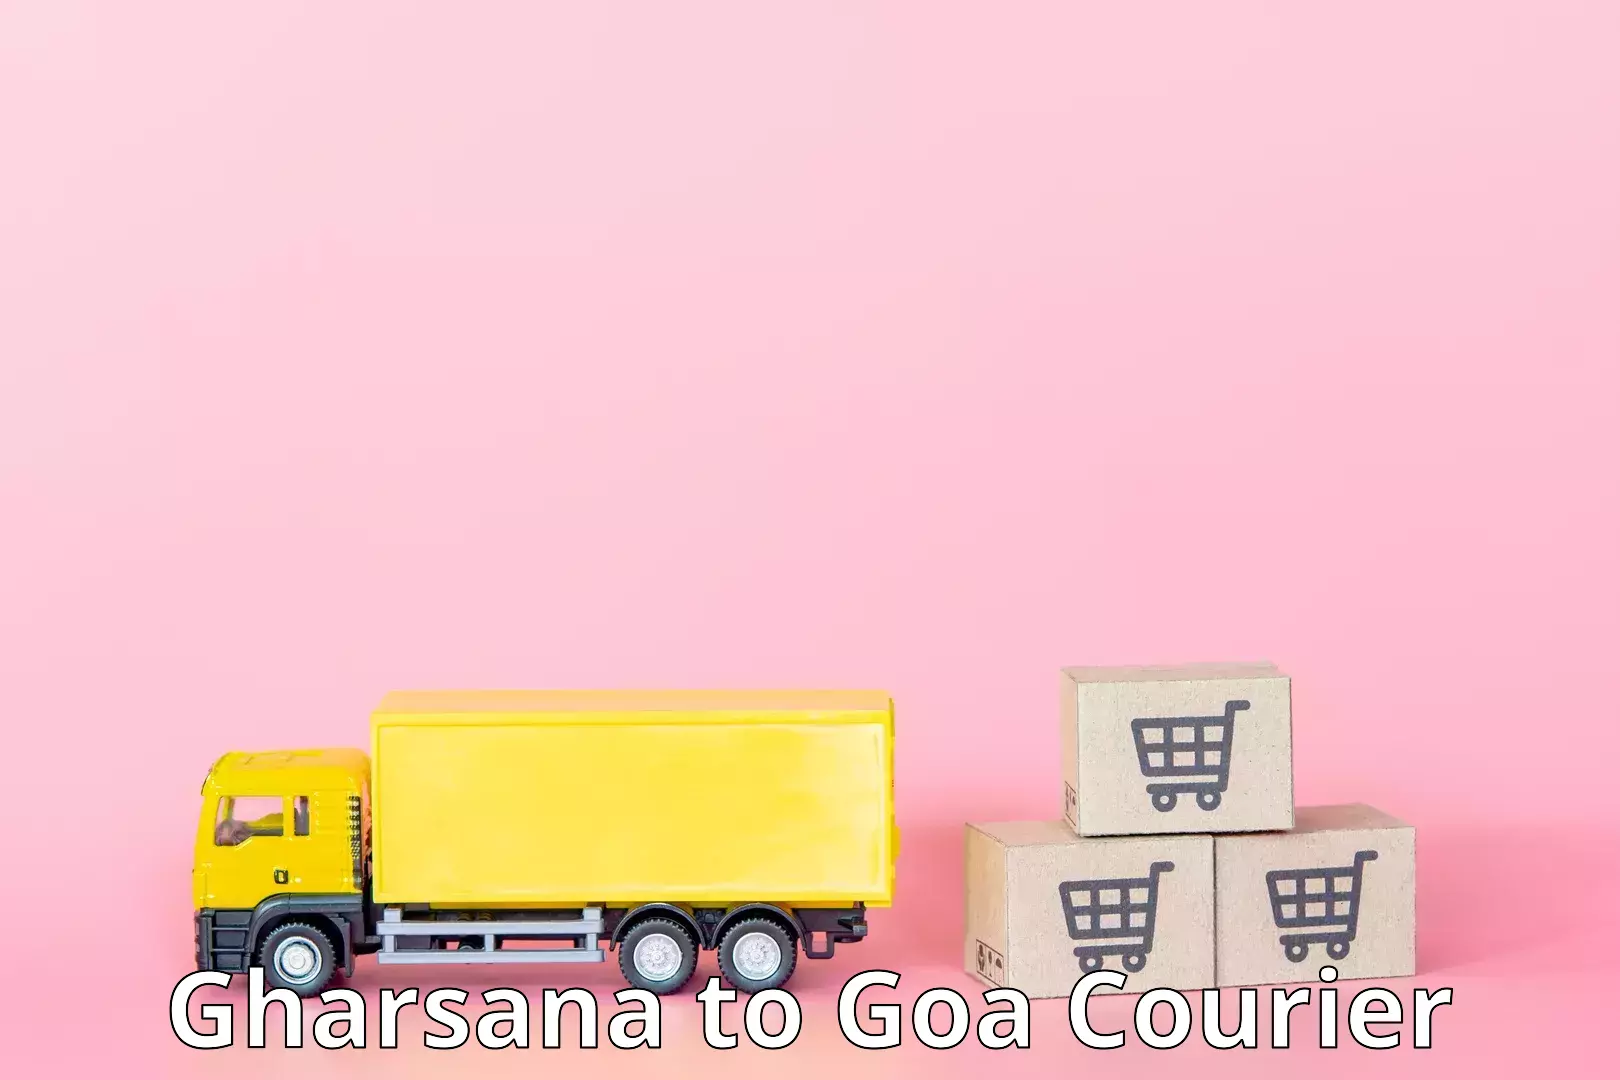 High-capacity parcel service Gharsana to Panaji